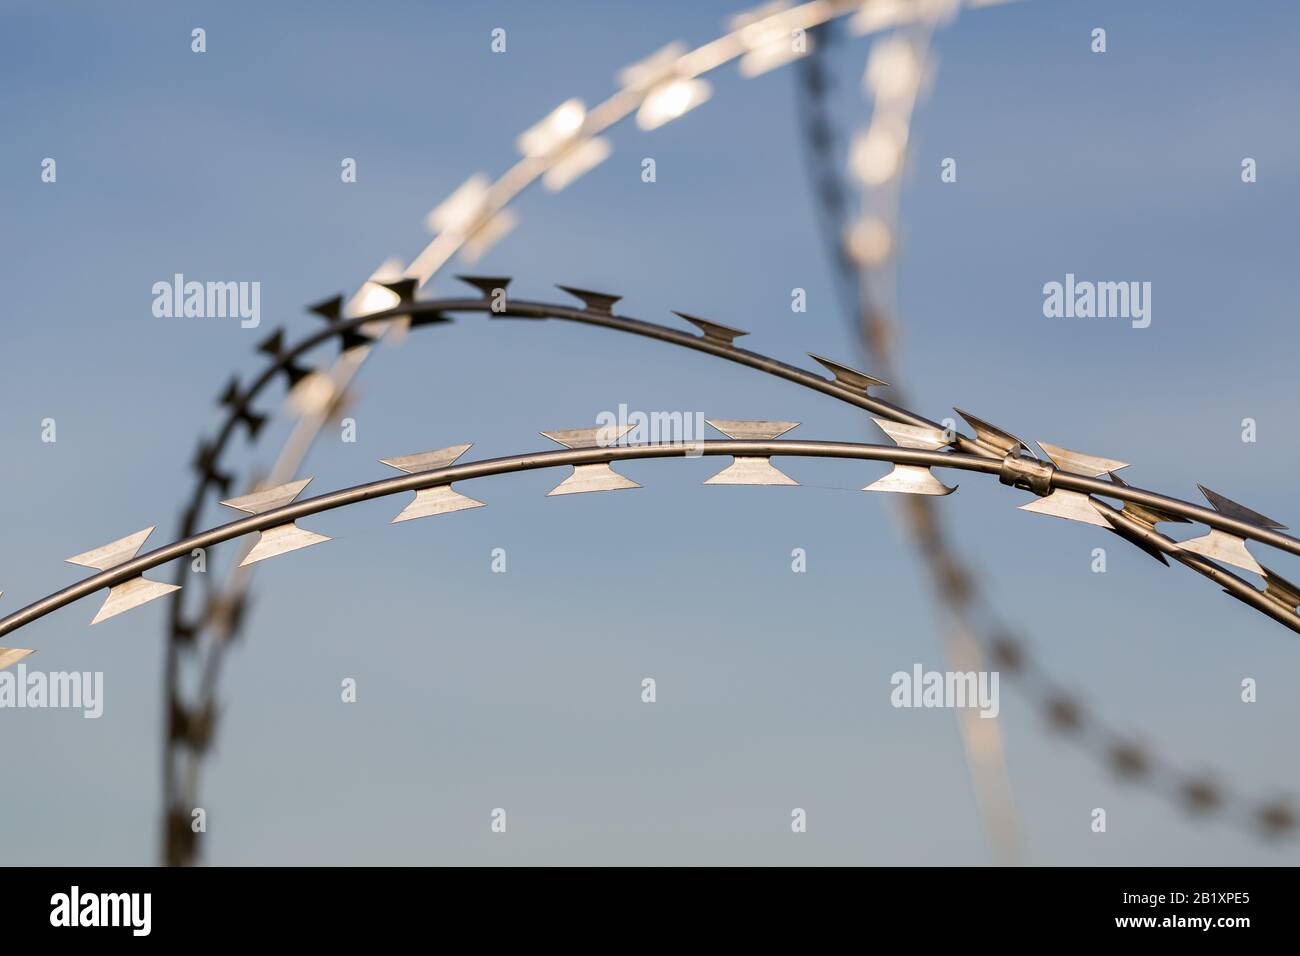 Detailansicht/isolierte Ansicht auf scharfem, gebogenem Rasierdraht. Blauer Hintergrund (Himmel). Einsatz an Grenzen, Flughäfen, Strafvollzugslagern, Militärstützpunkten. Stockfoto